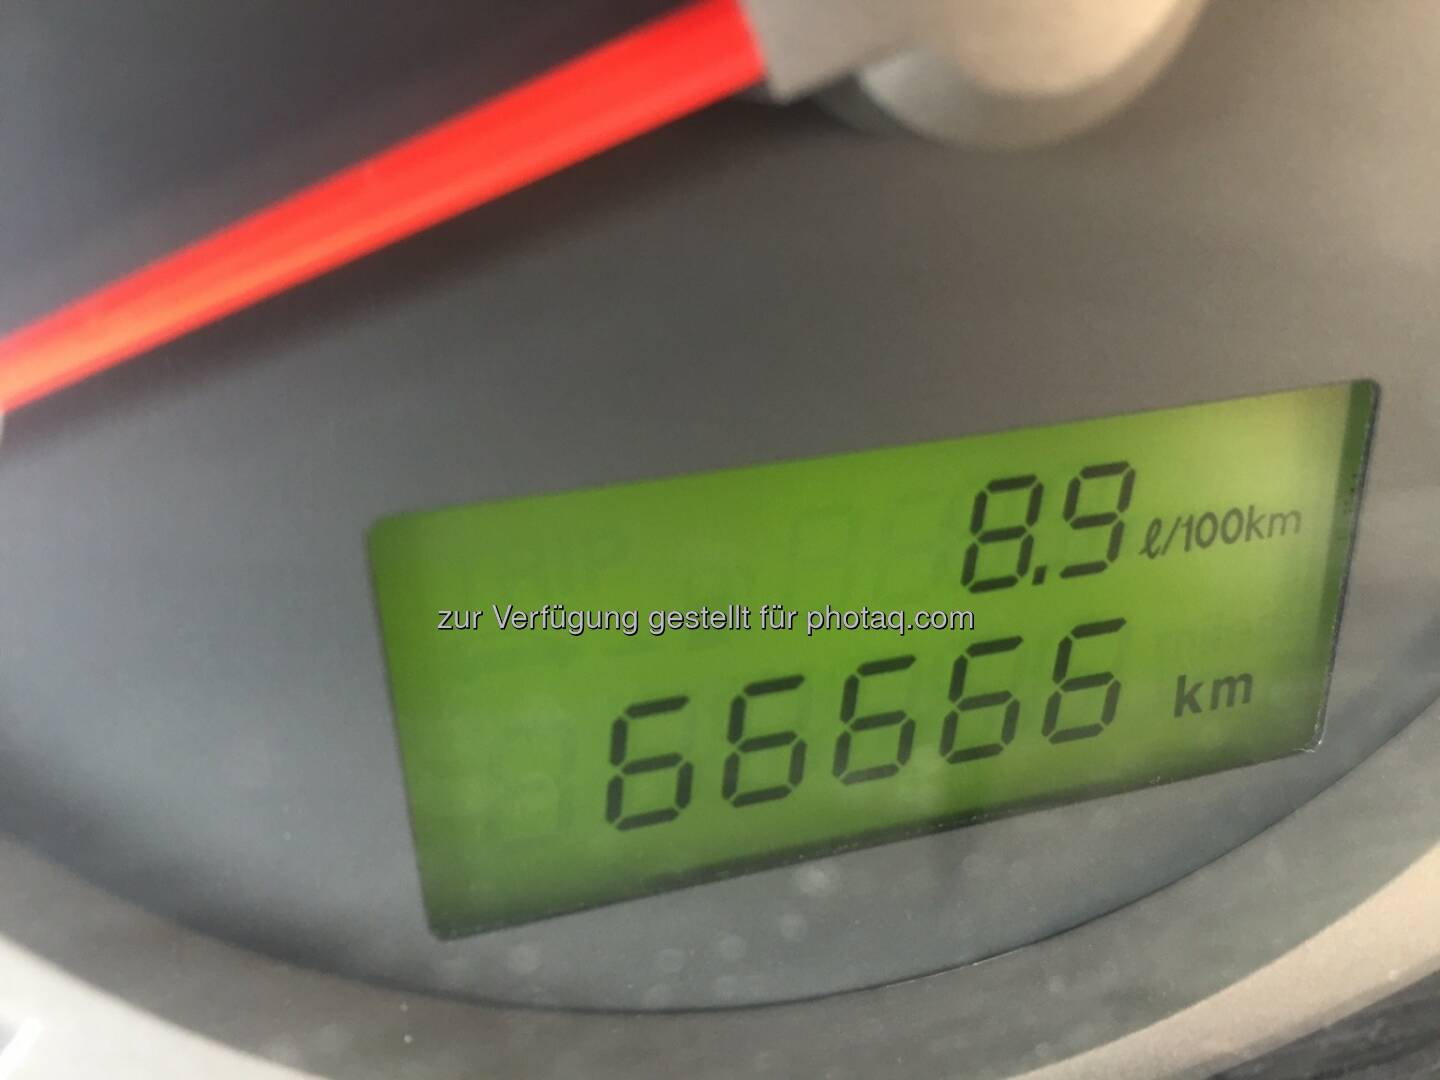 66666 Km hat mein Auto geleistet